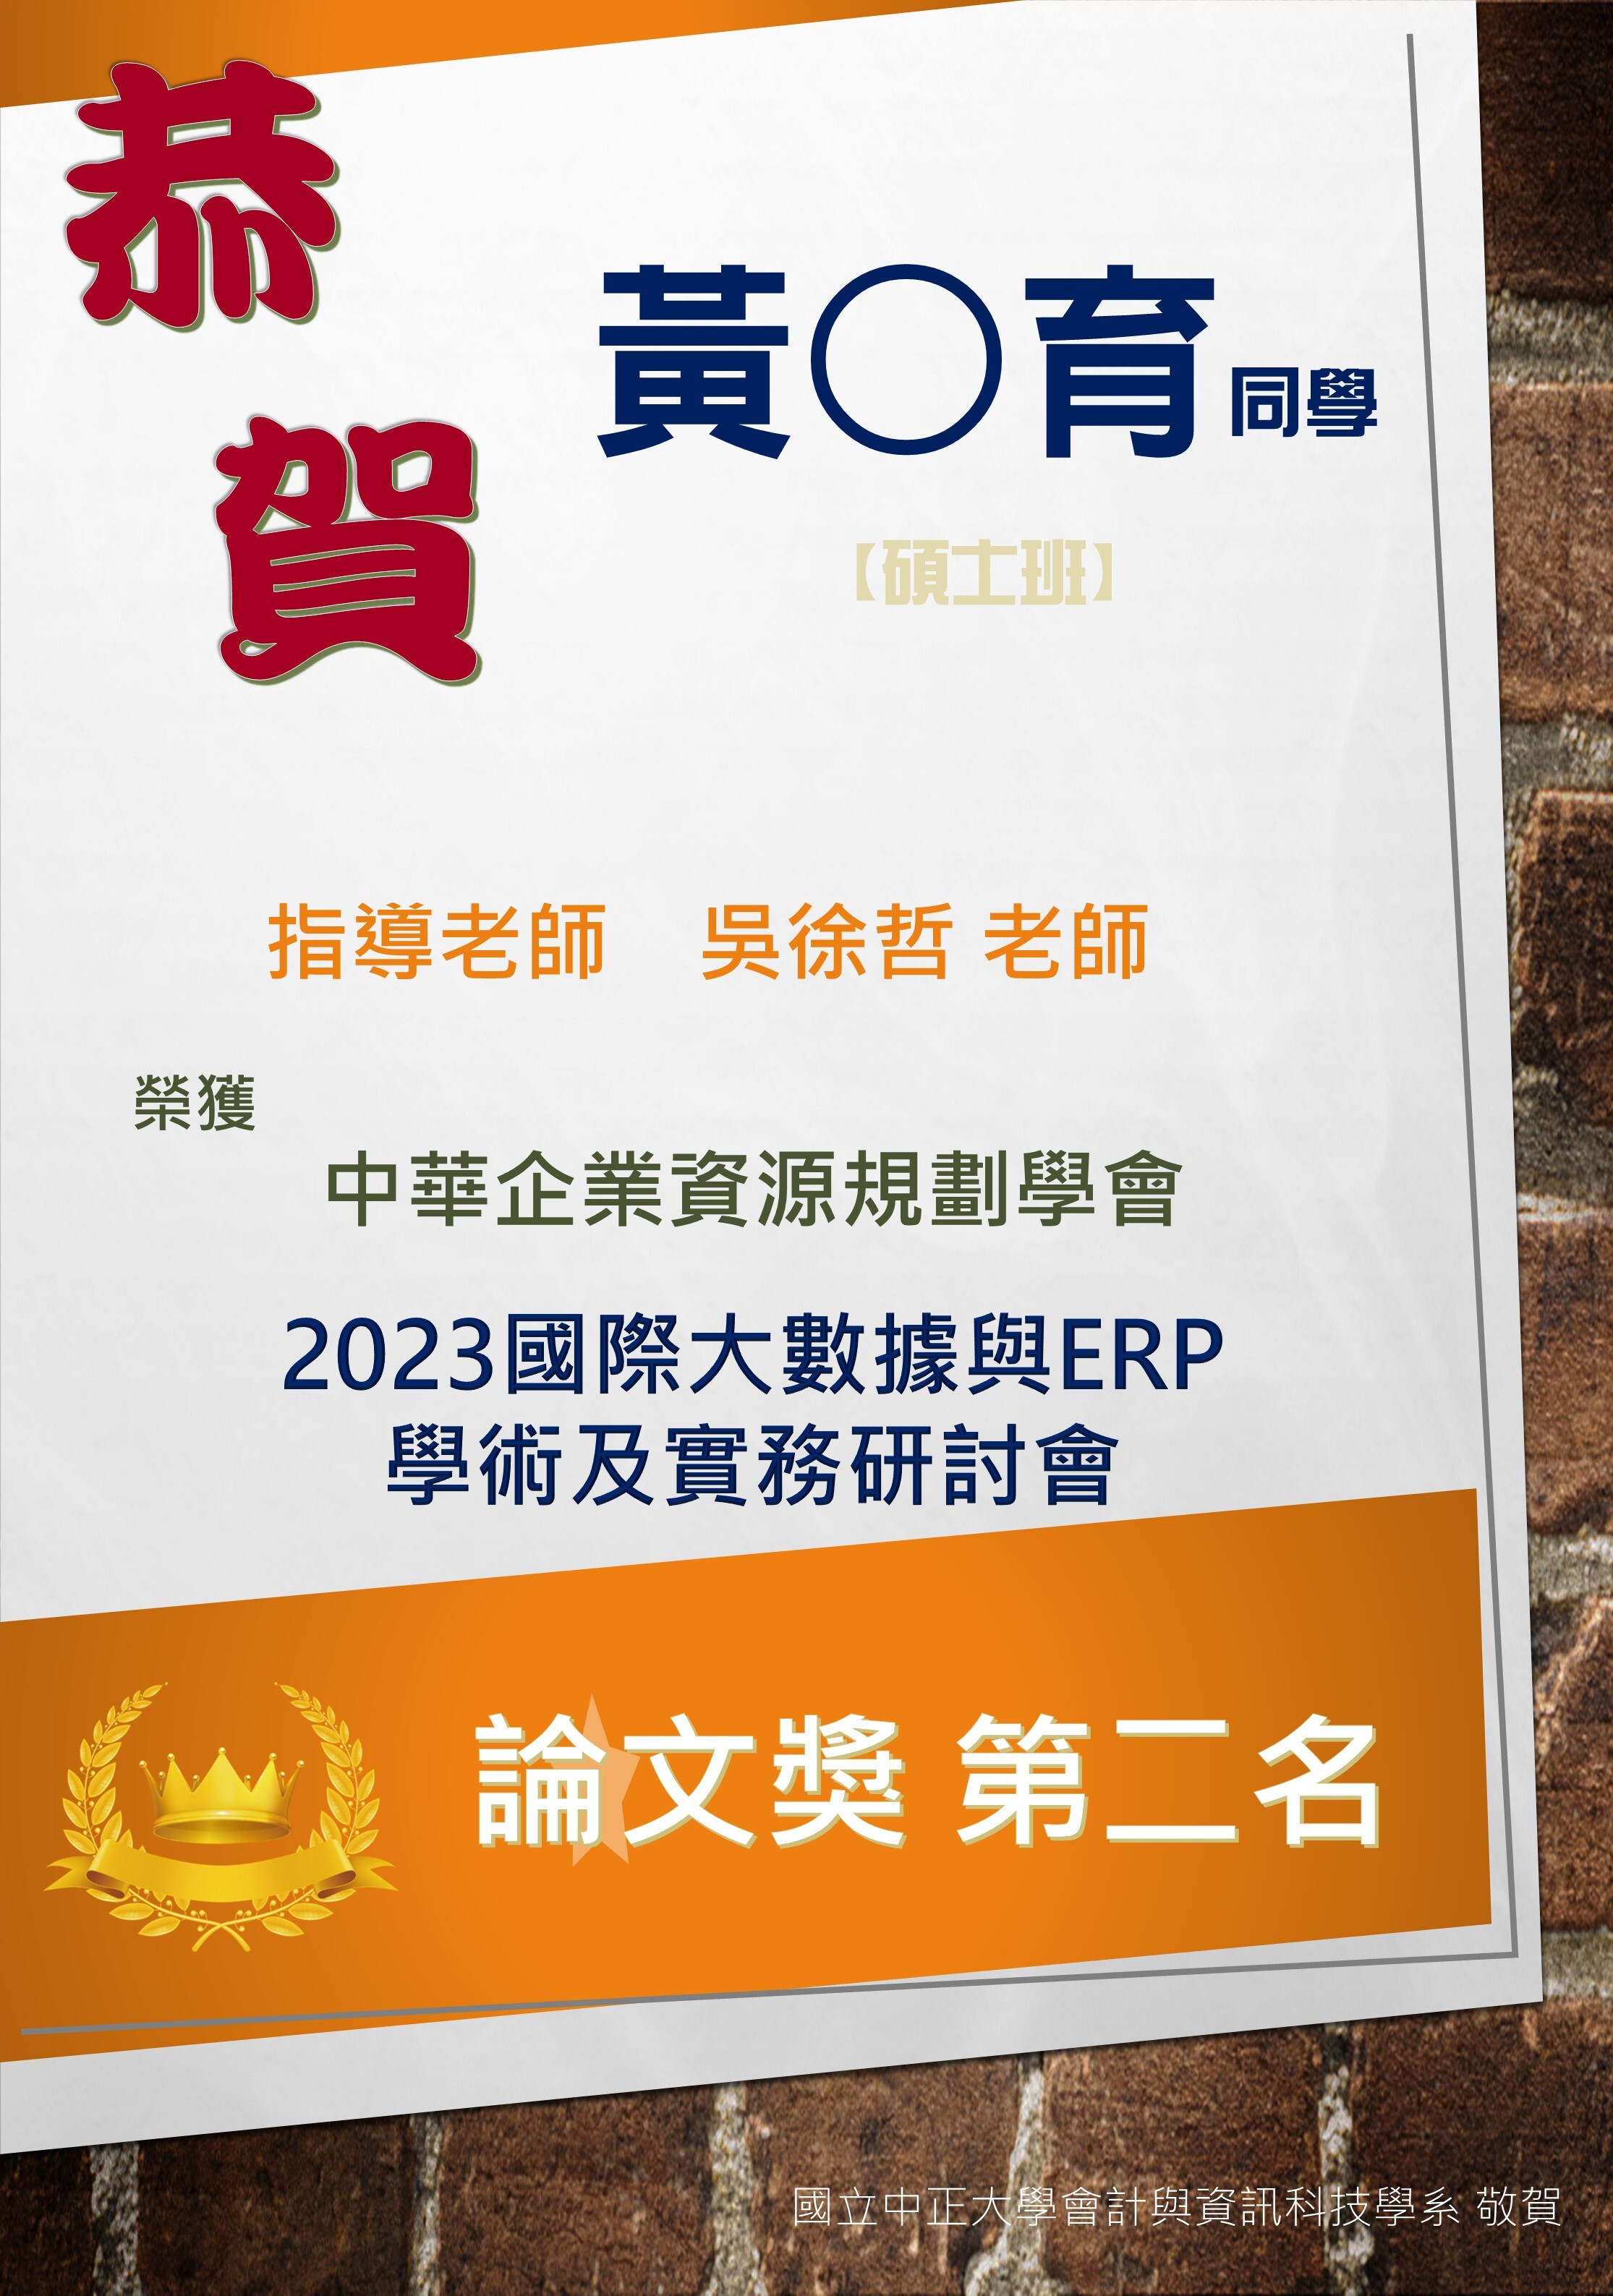 2023國際大數據ERP論文獎